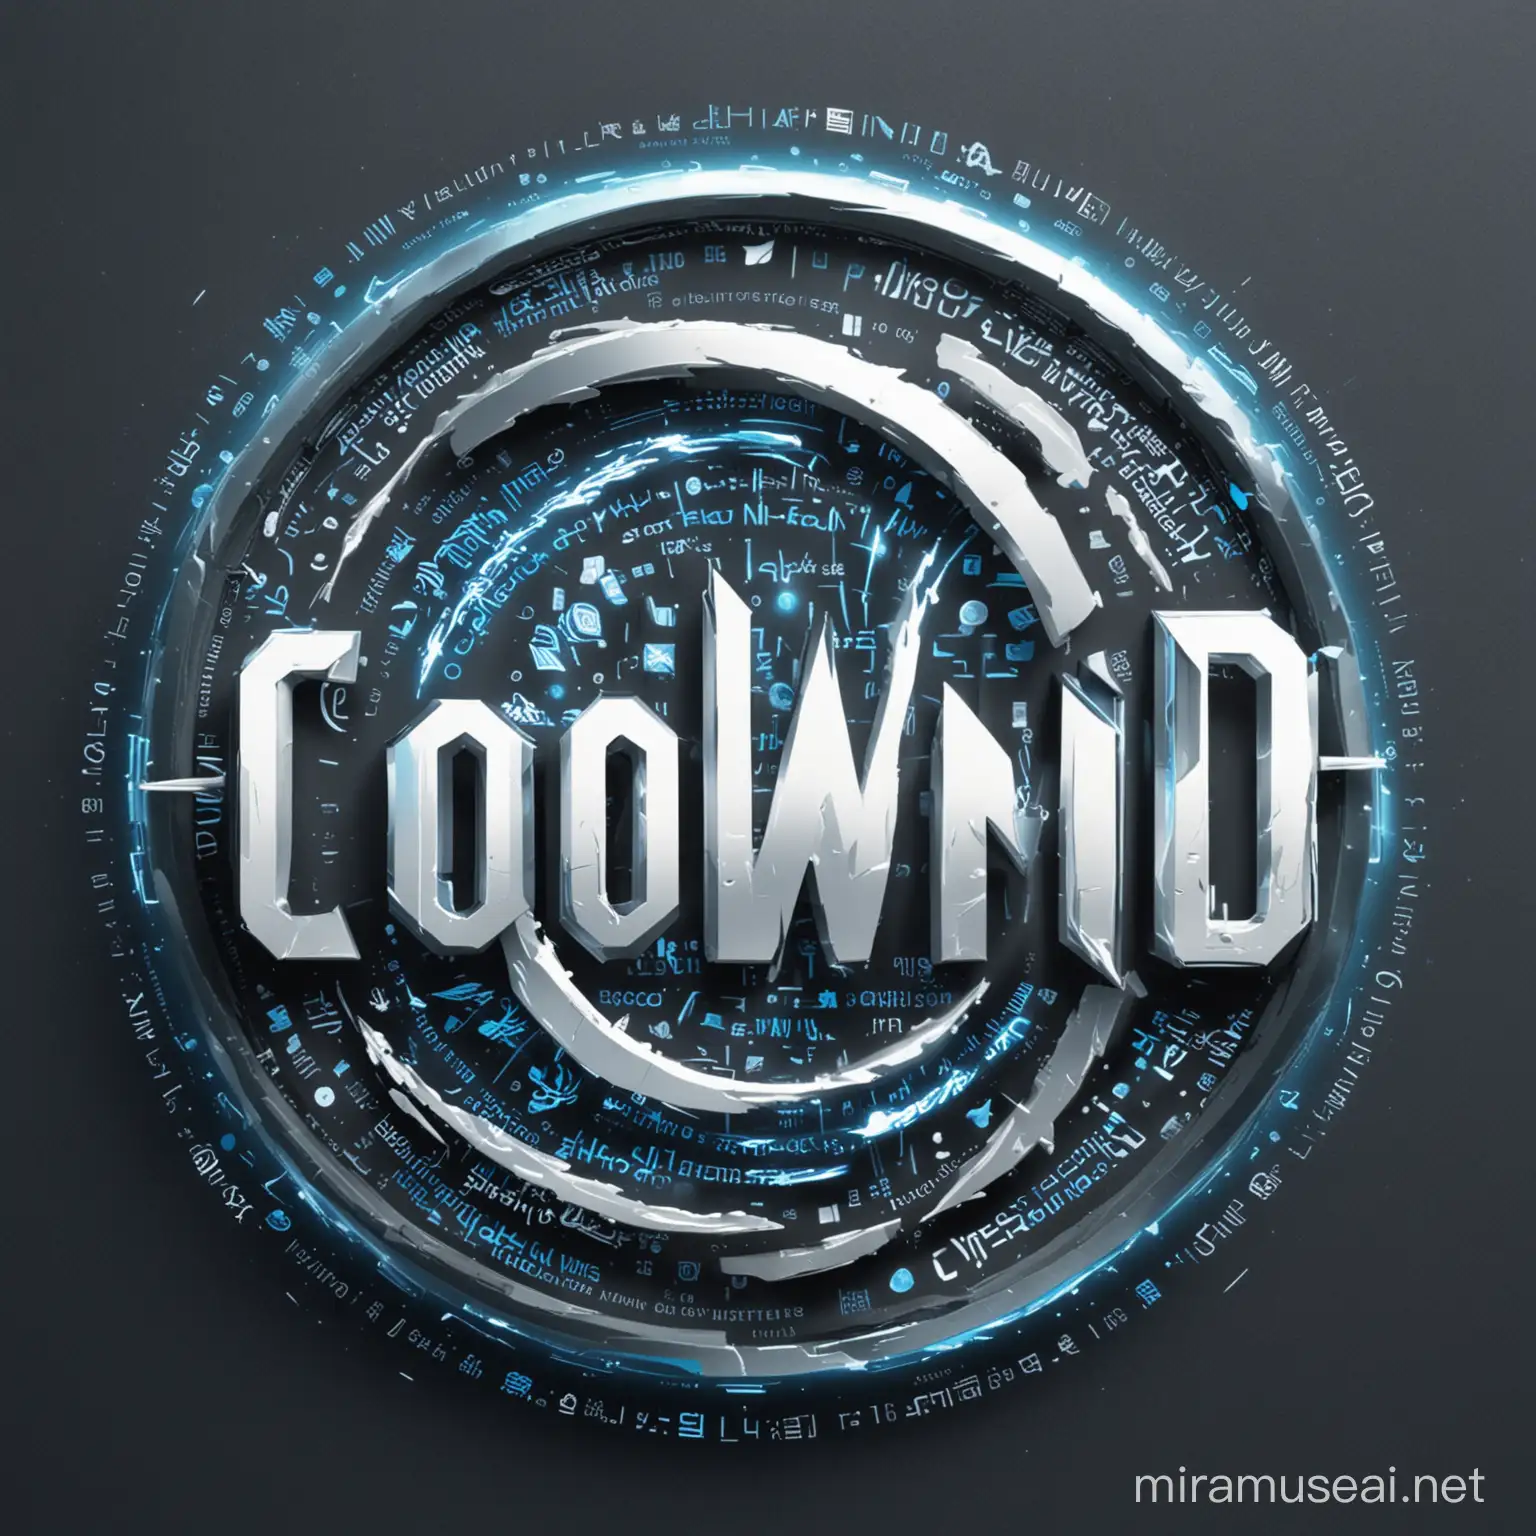 包含Coolwind这个单词的logo，带有风元素，并且含有网络空间黑客元素

